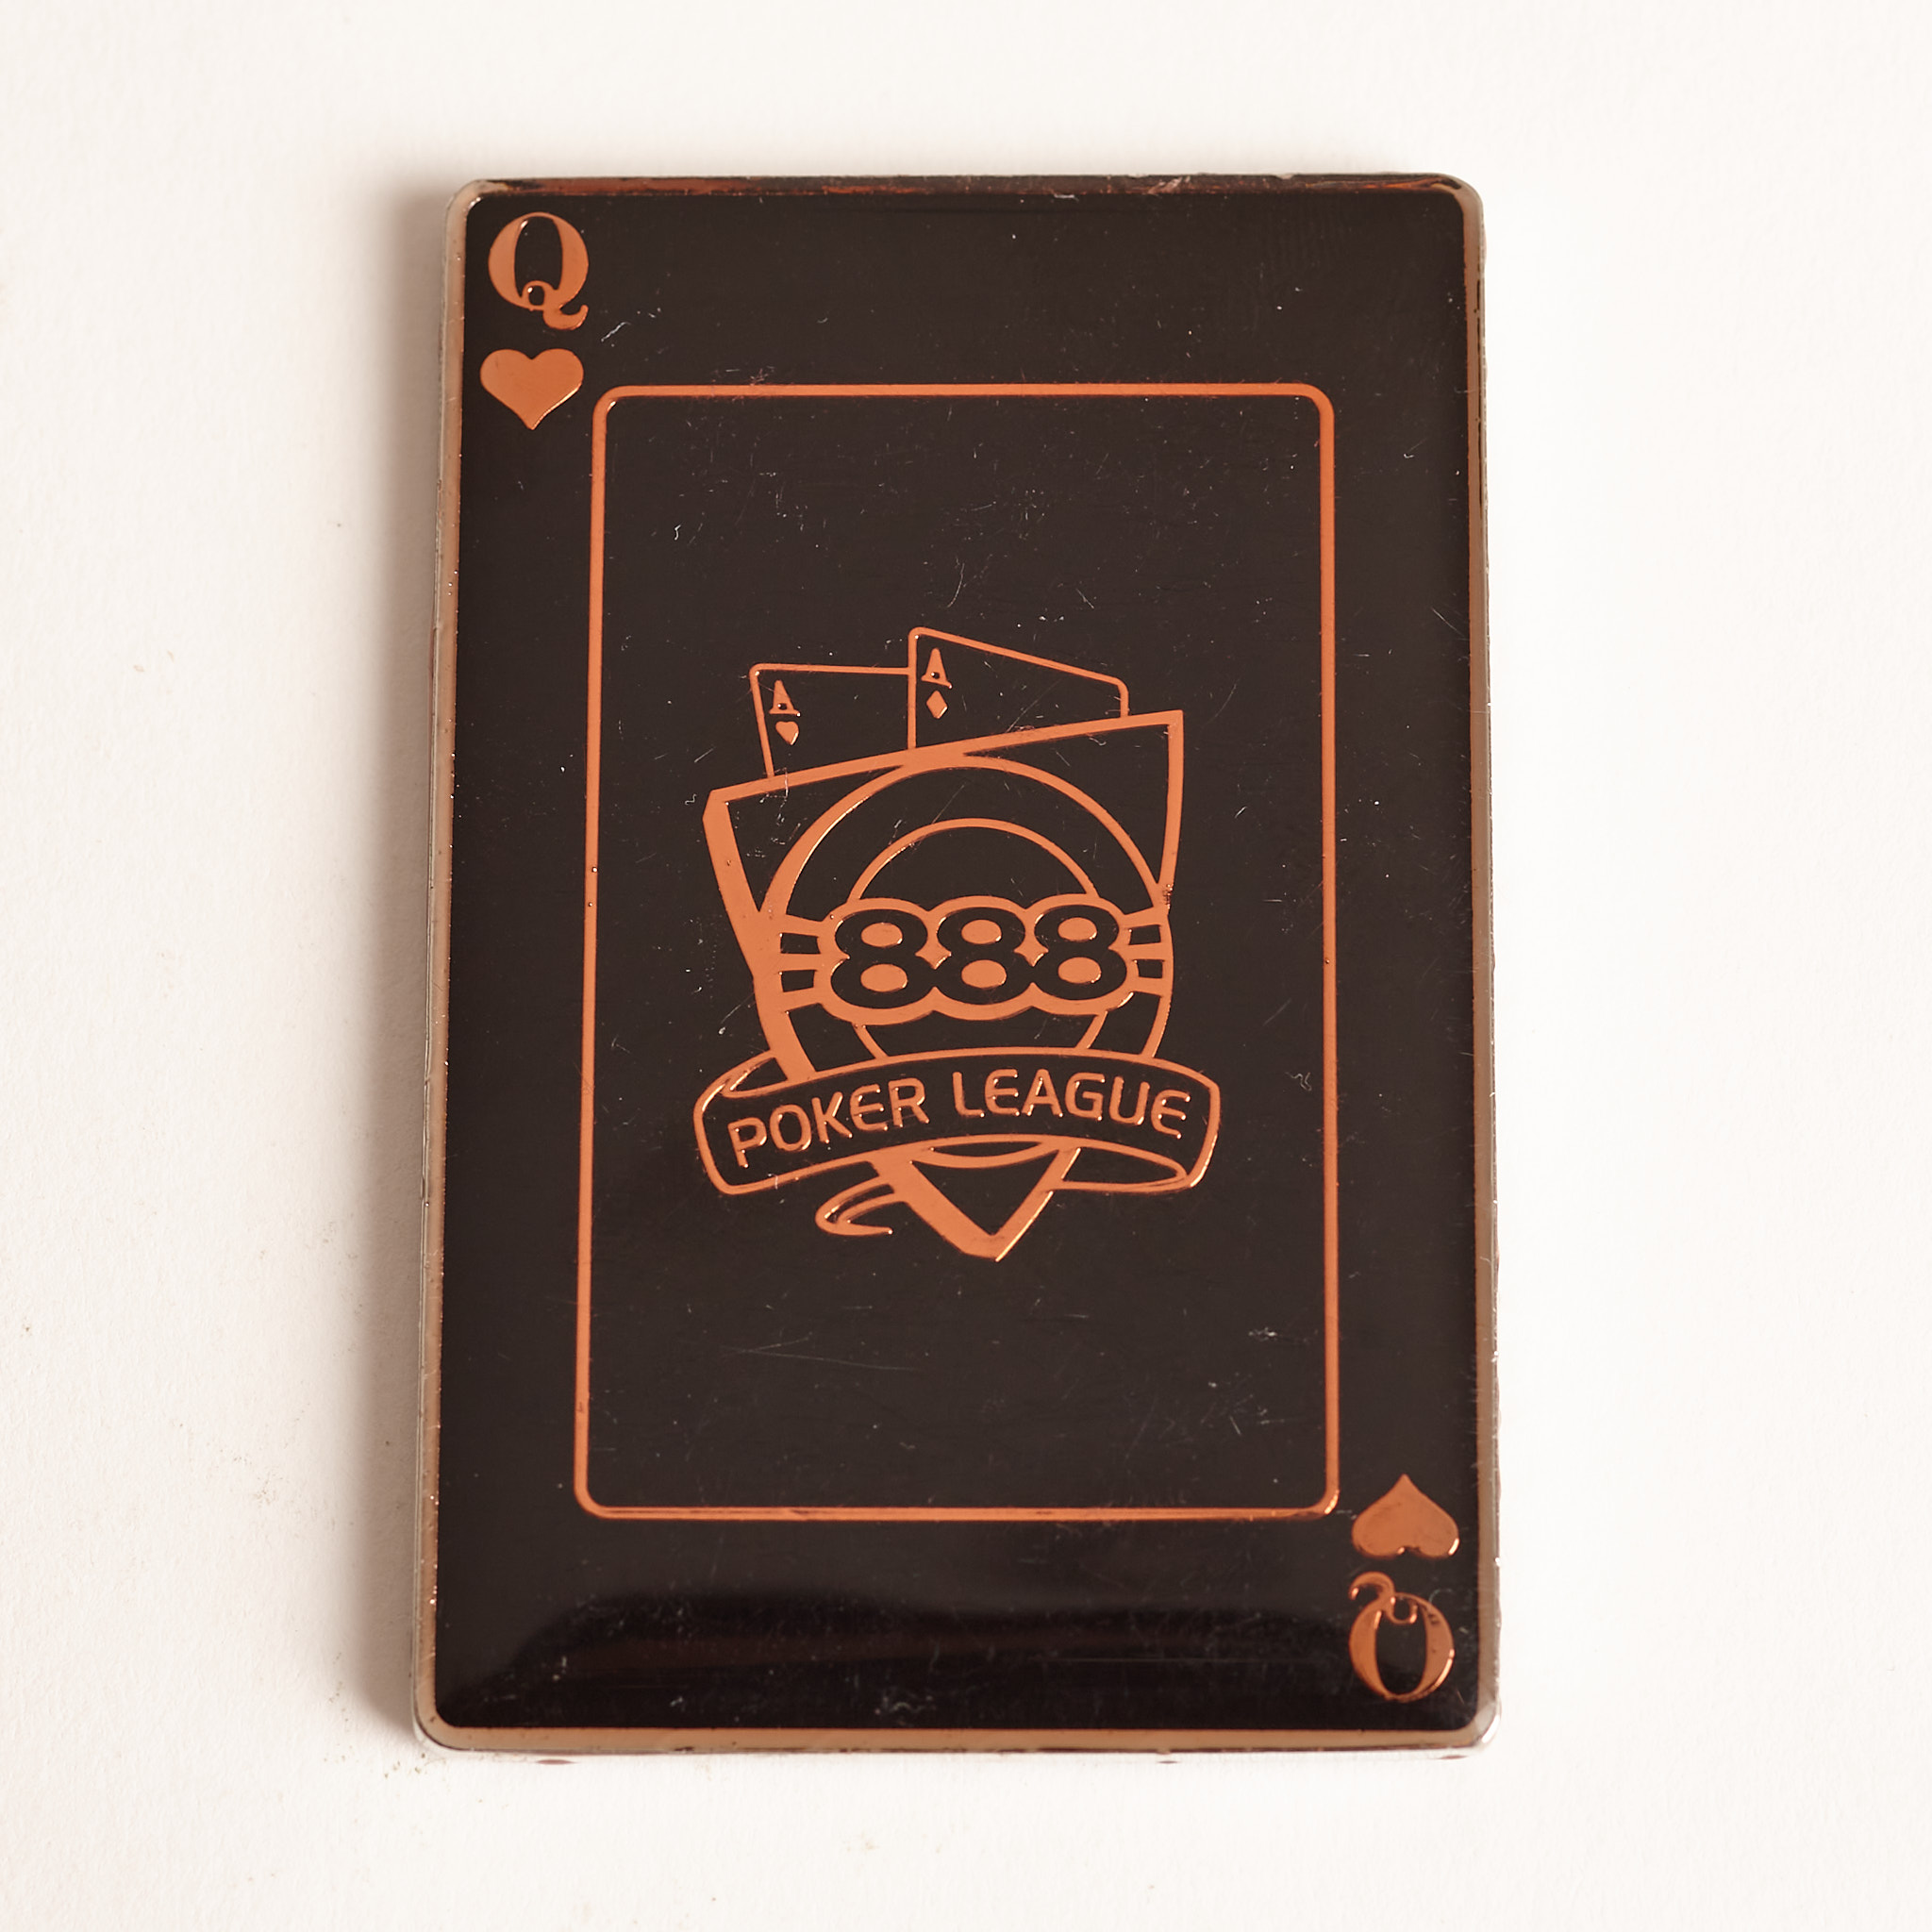 888 POKER LEAGUE, QUEEN HEARTS, TOURNAMENT WINNER, ROYAL FLUSH SERIES, Poker Card Guard